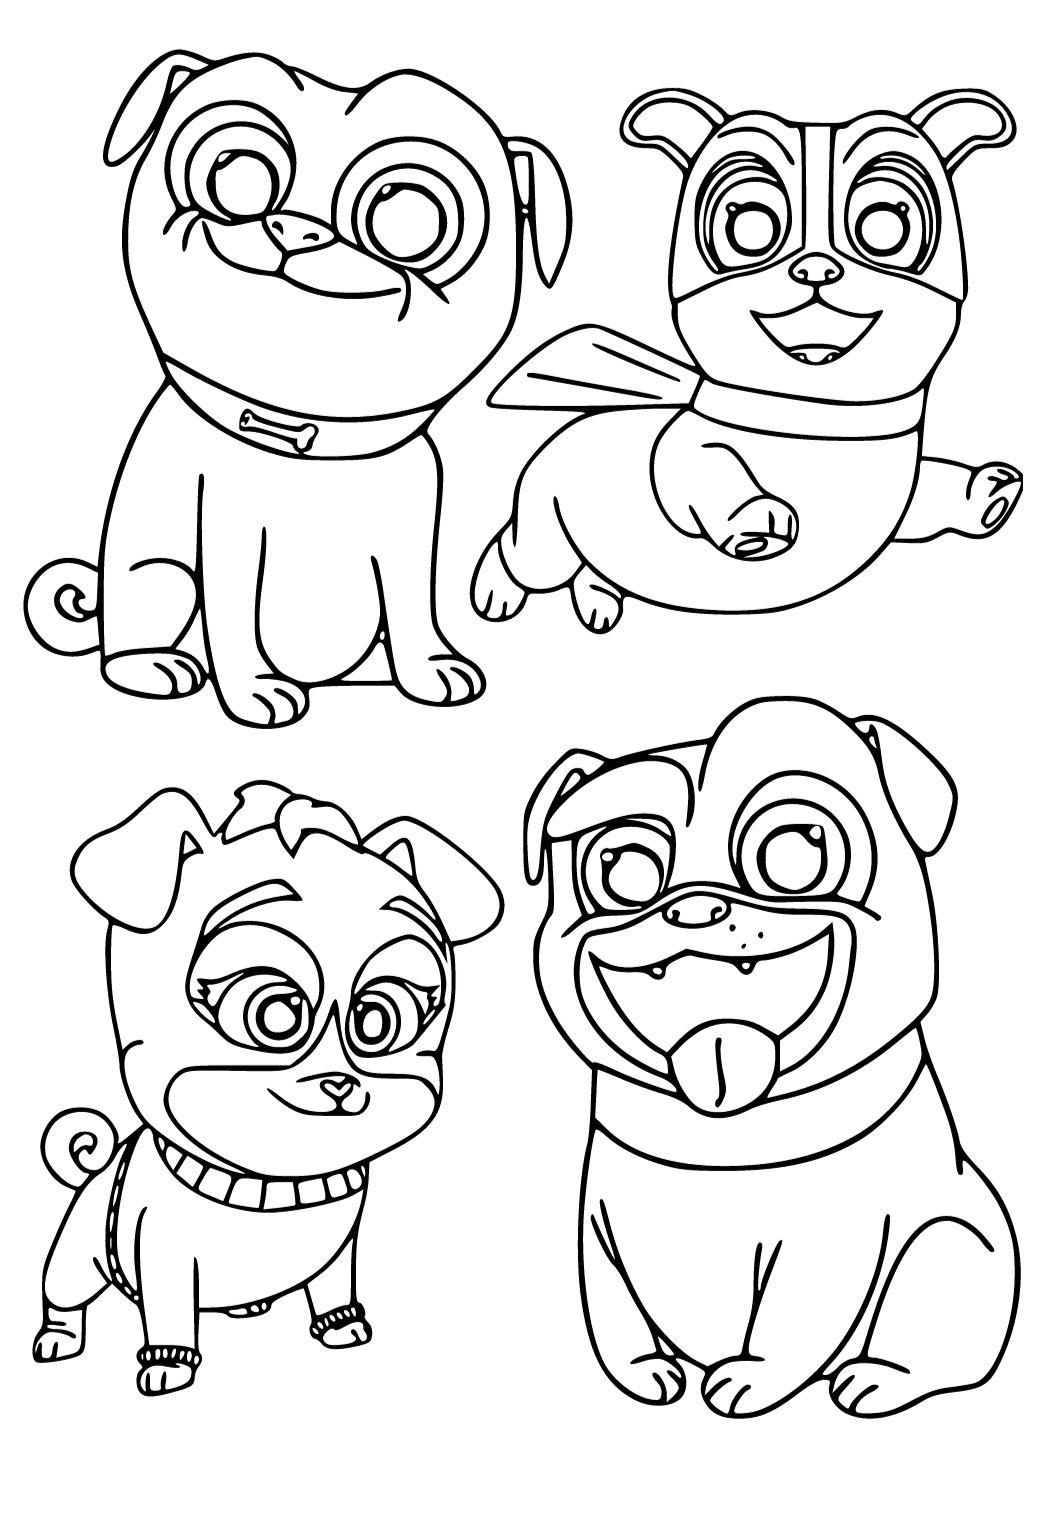 Desenho e Imagem O Menor Pet Shop Macaco para Colorir e Imprimir Grátis  para Adultos e Crianças 